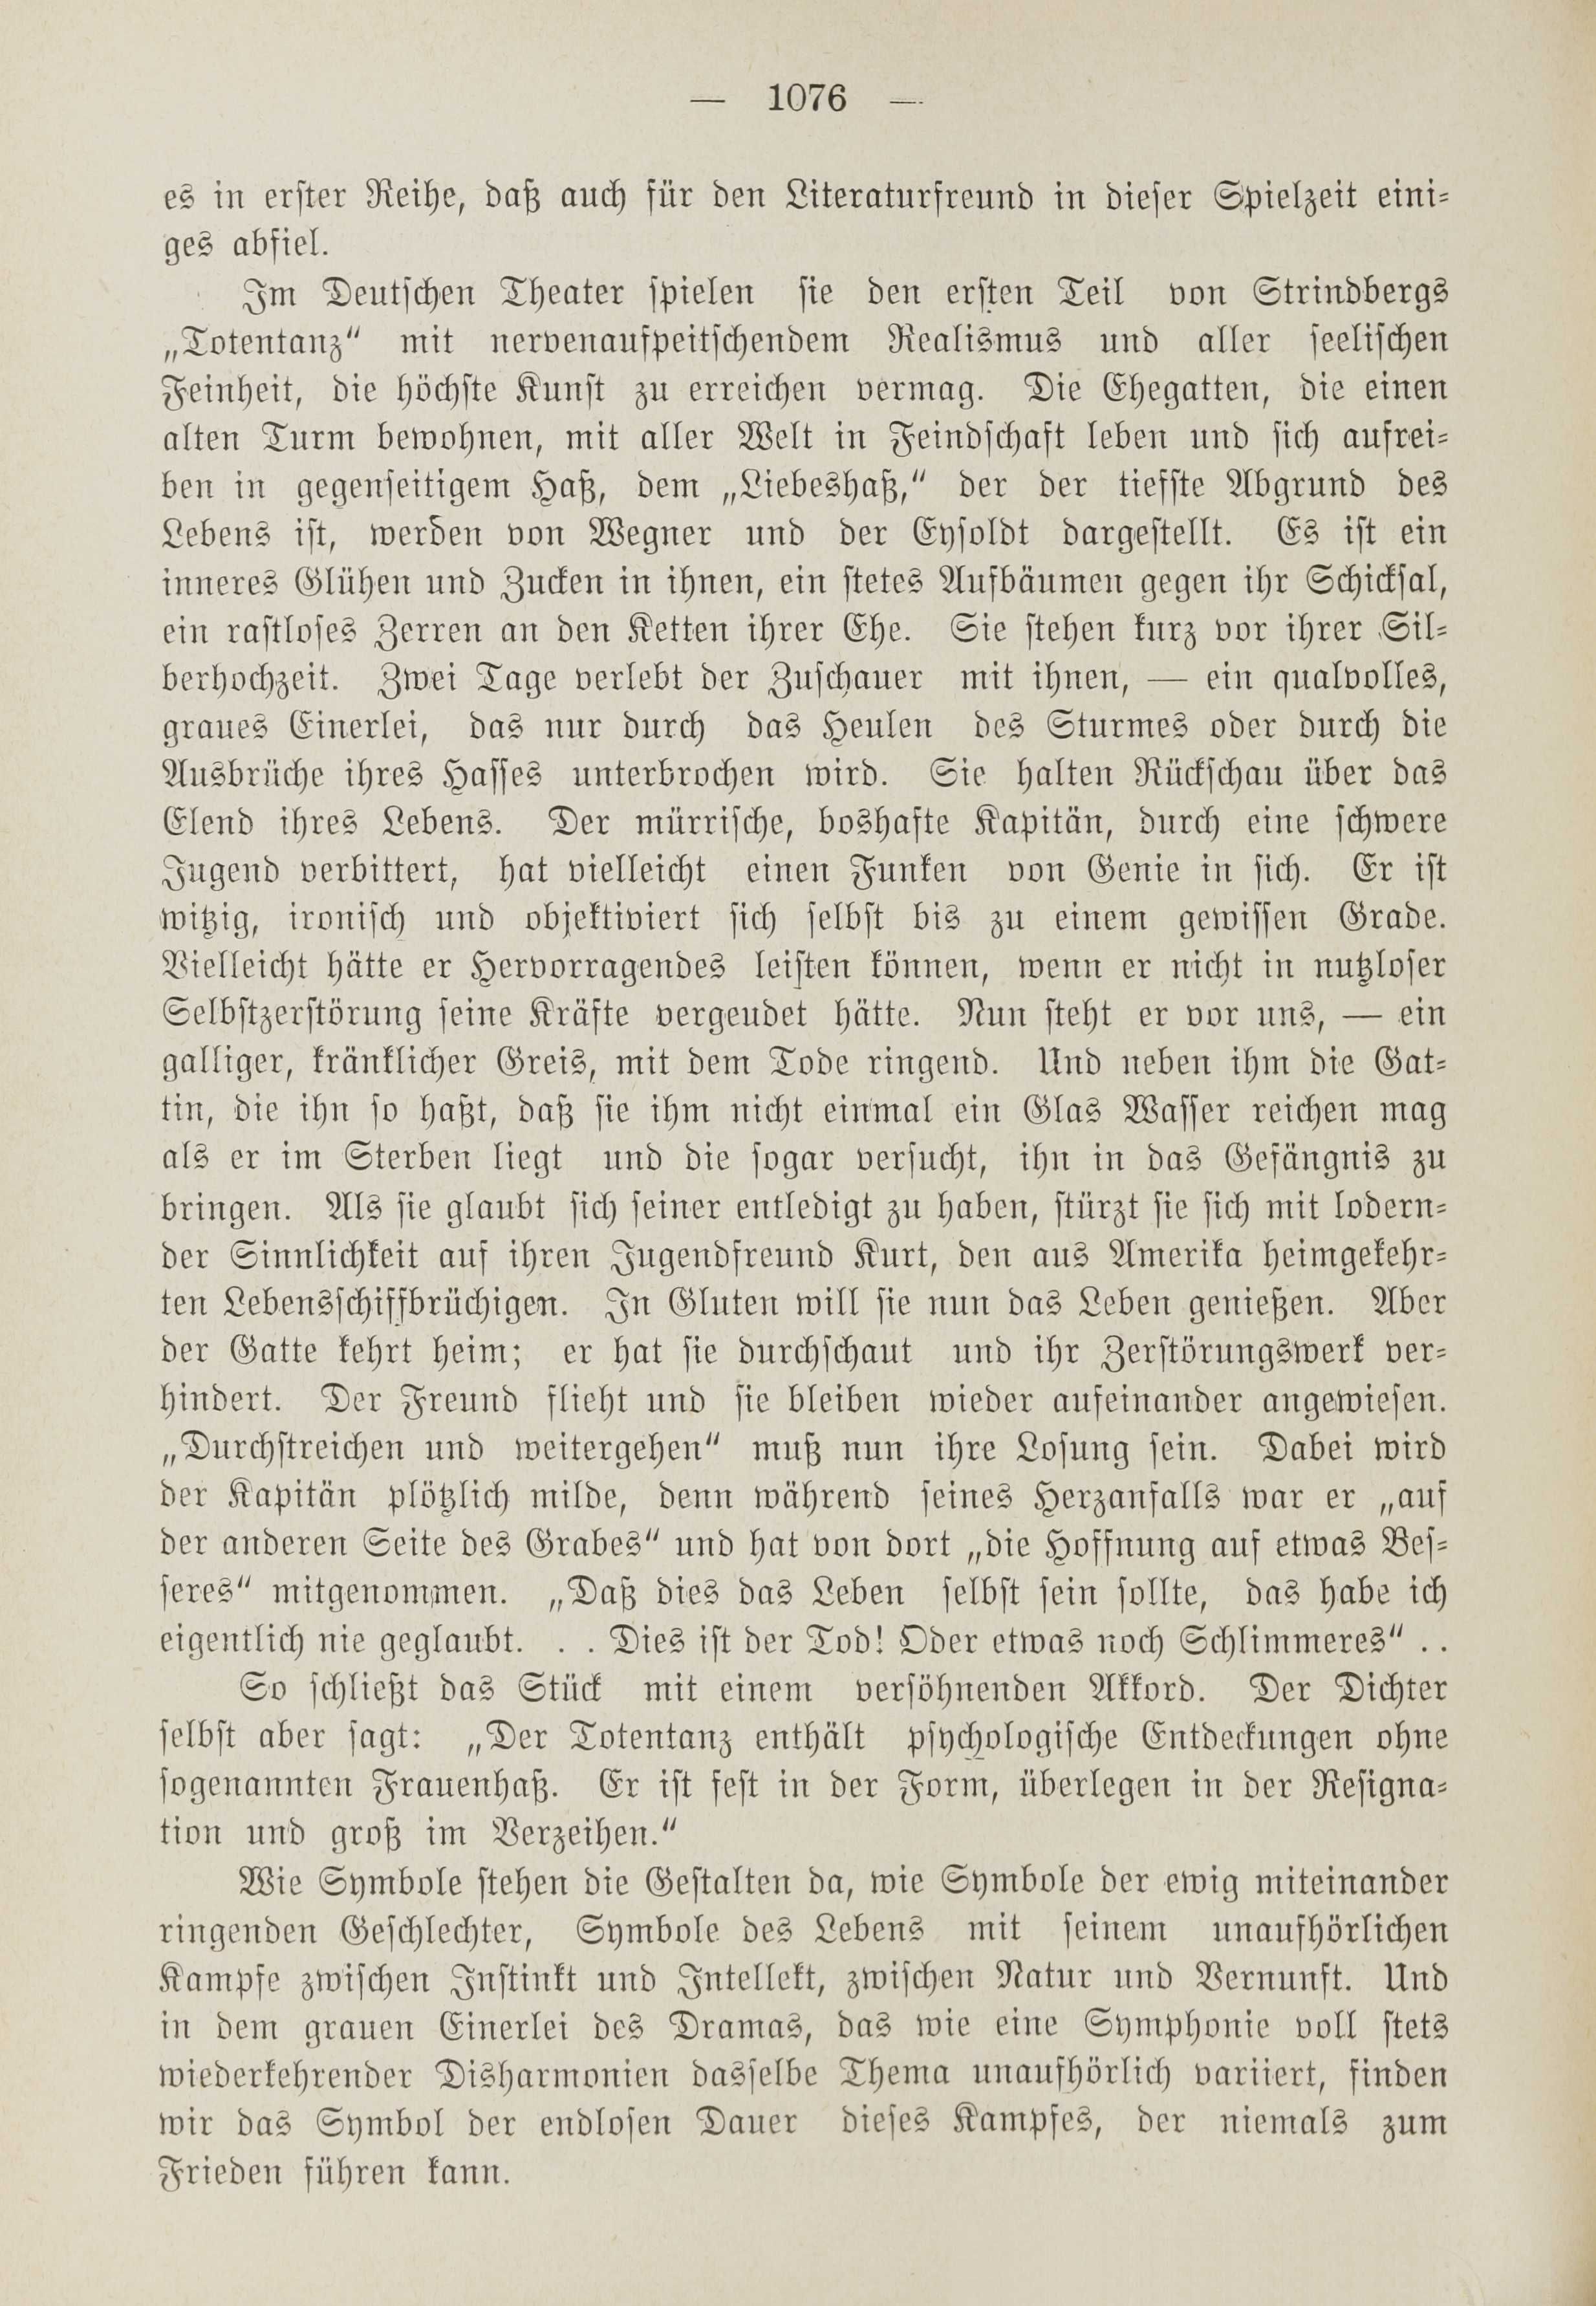 Deutsche Monatsschrift für Russland [1] (1912) | 1084. (1076) Main body of text